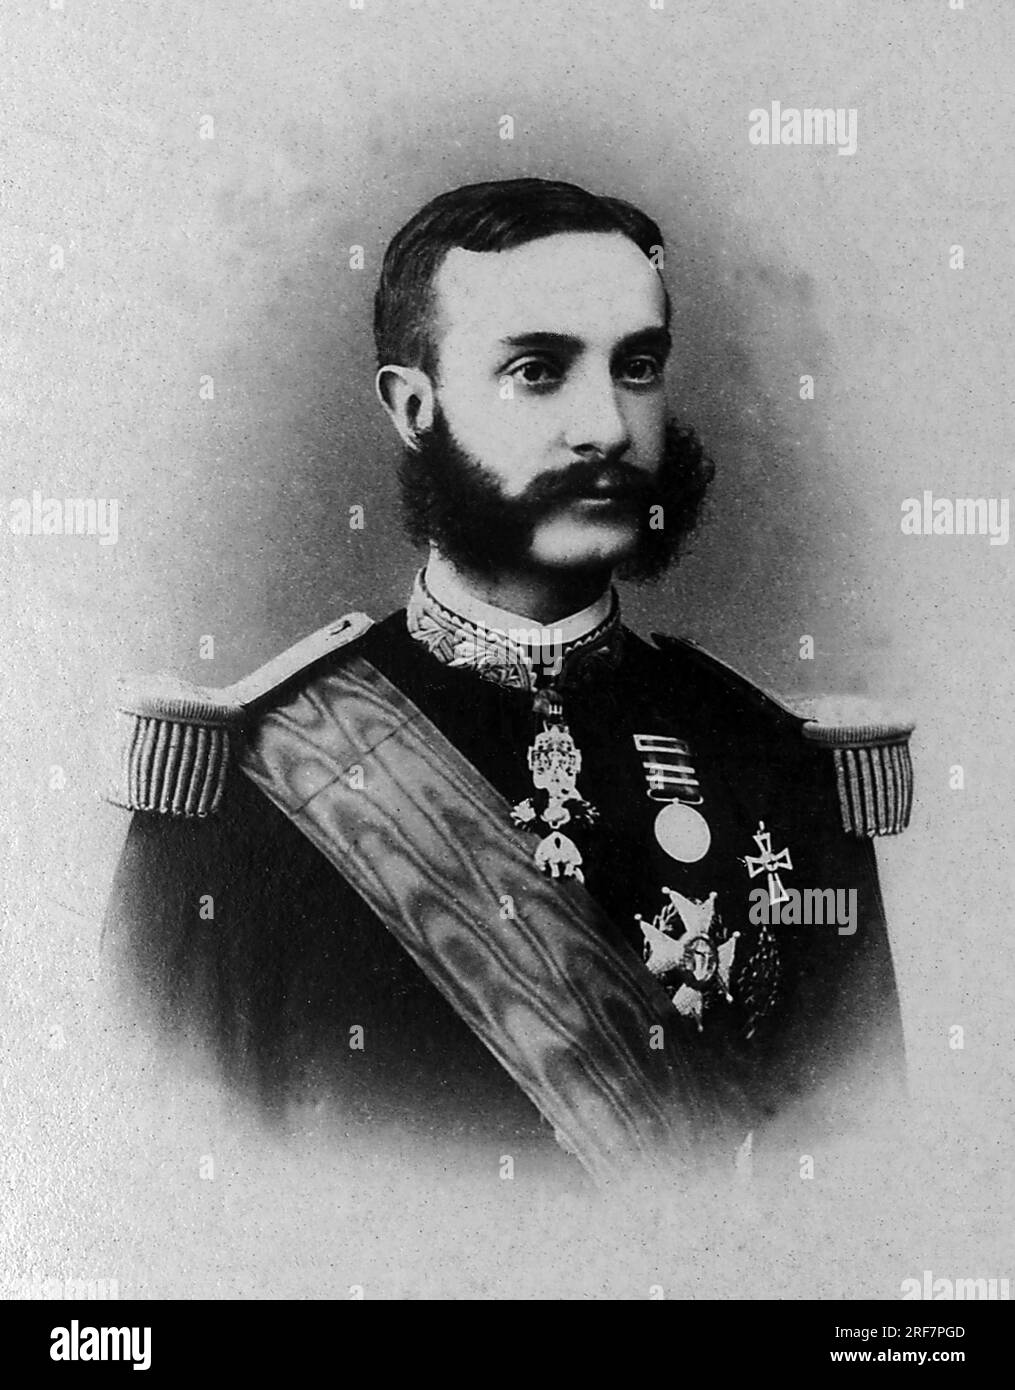 Portrait de Alphonse XII (1857-1885), il devint roi d'Espagne de 1874 a 1885 apres un long Exil en Europe. Stockfoto